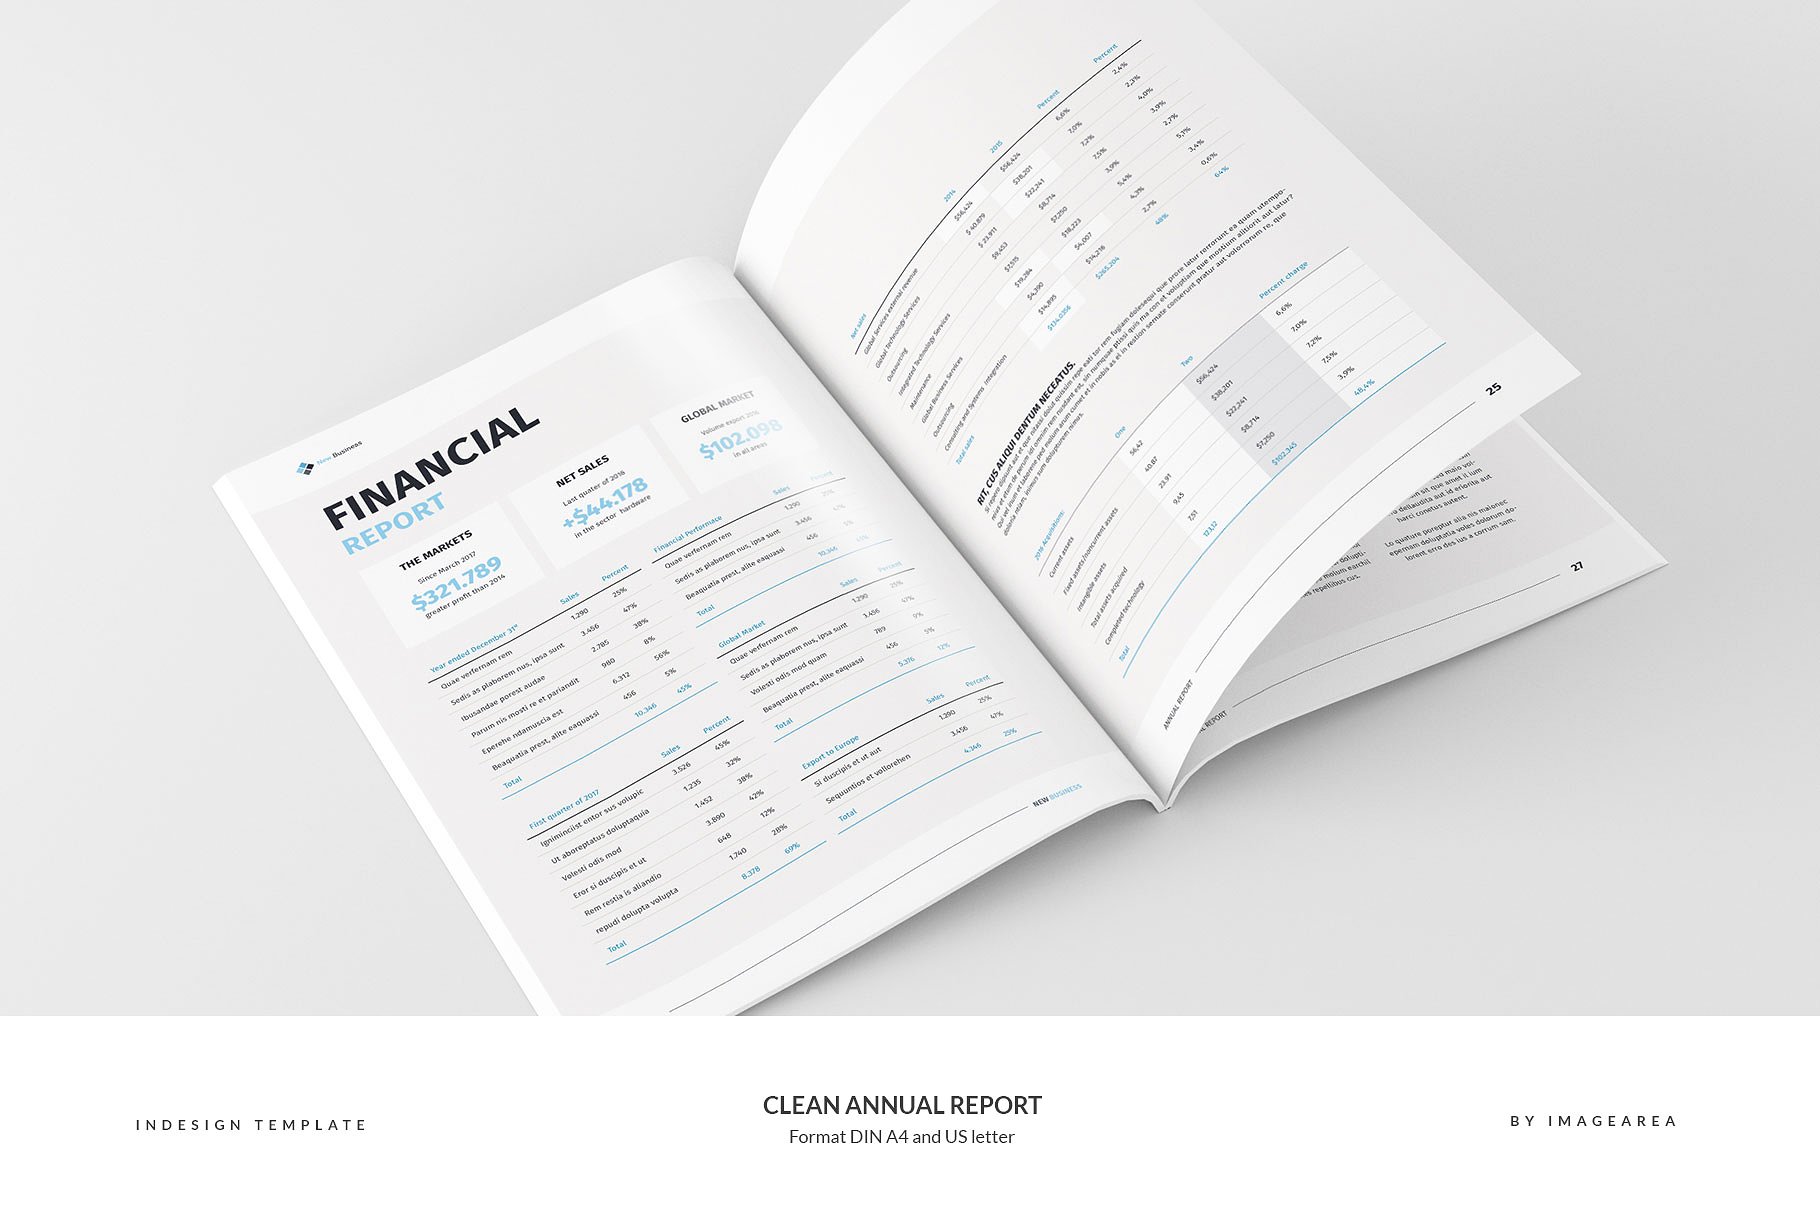 简洁专业的年报模板 Clean Annual Report插图(12)